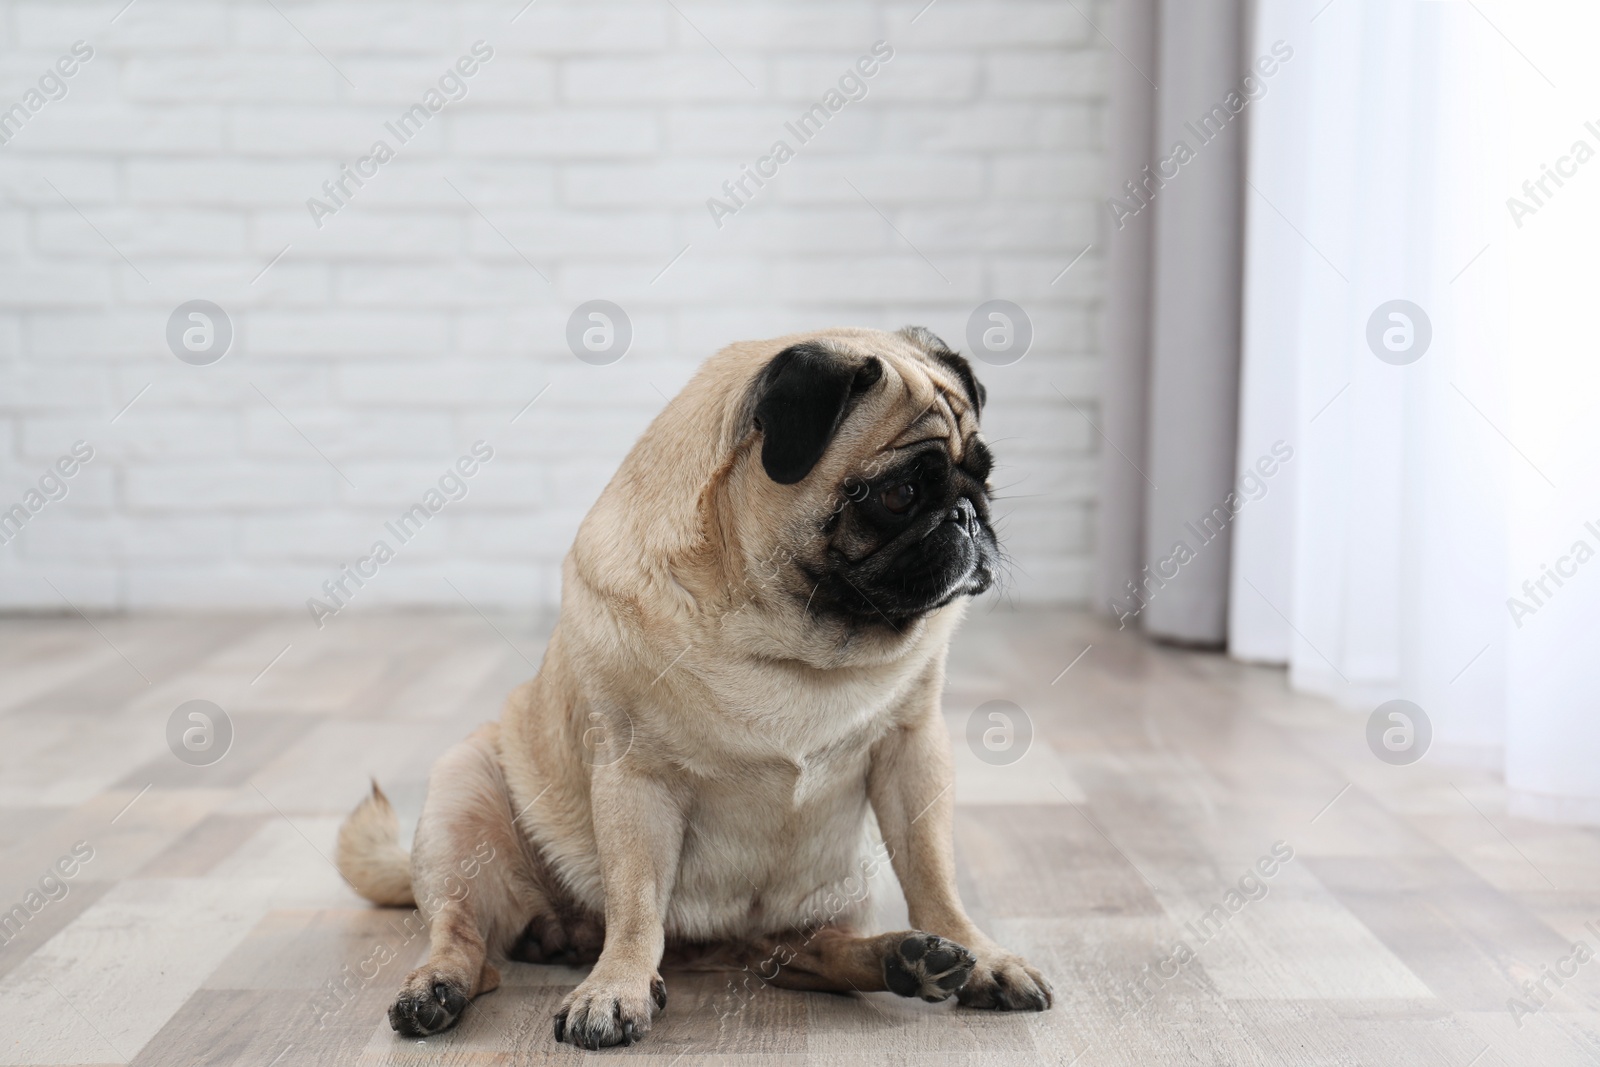 Photo of Happy cute pug dog on floor indoors